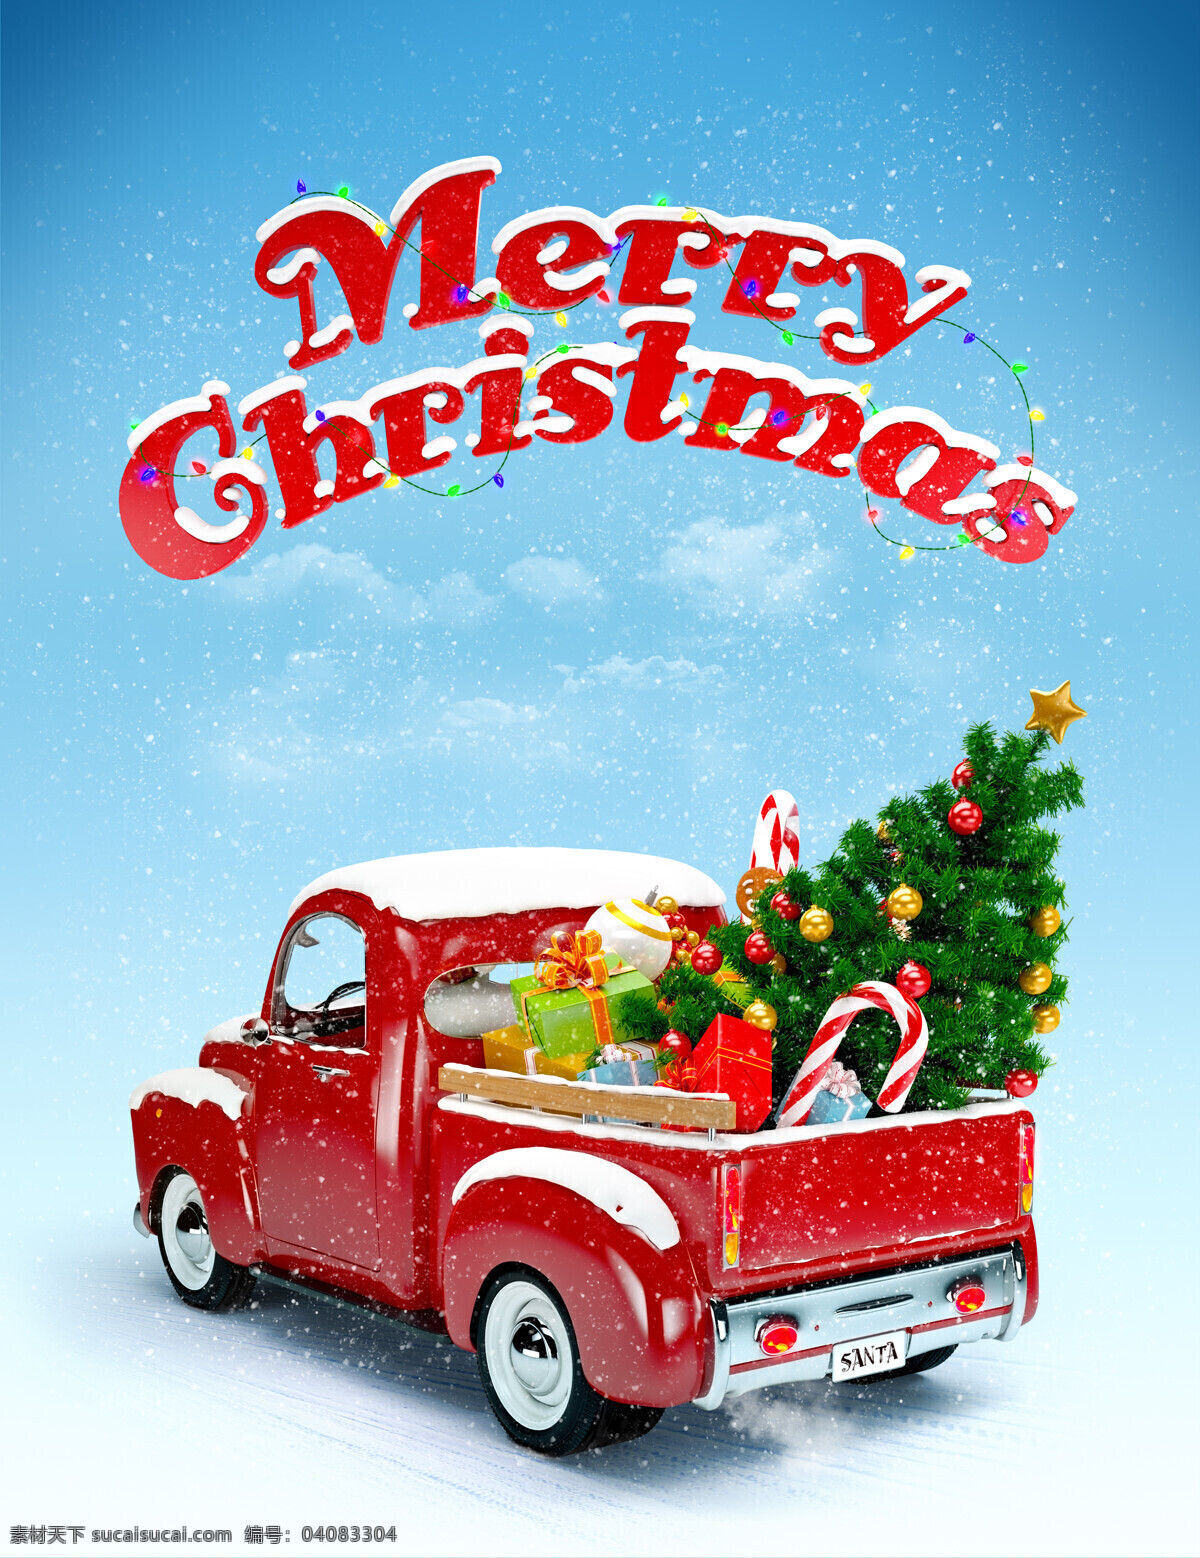 圣诞车 圣诞 圣诞老人 红色 星光 璀璨 驯鹿 鹿车 节日庆祝 文化艺术 圣诞节 merry christmas 动漫动画